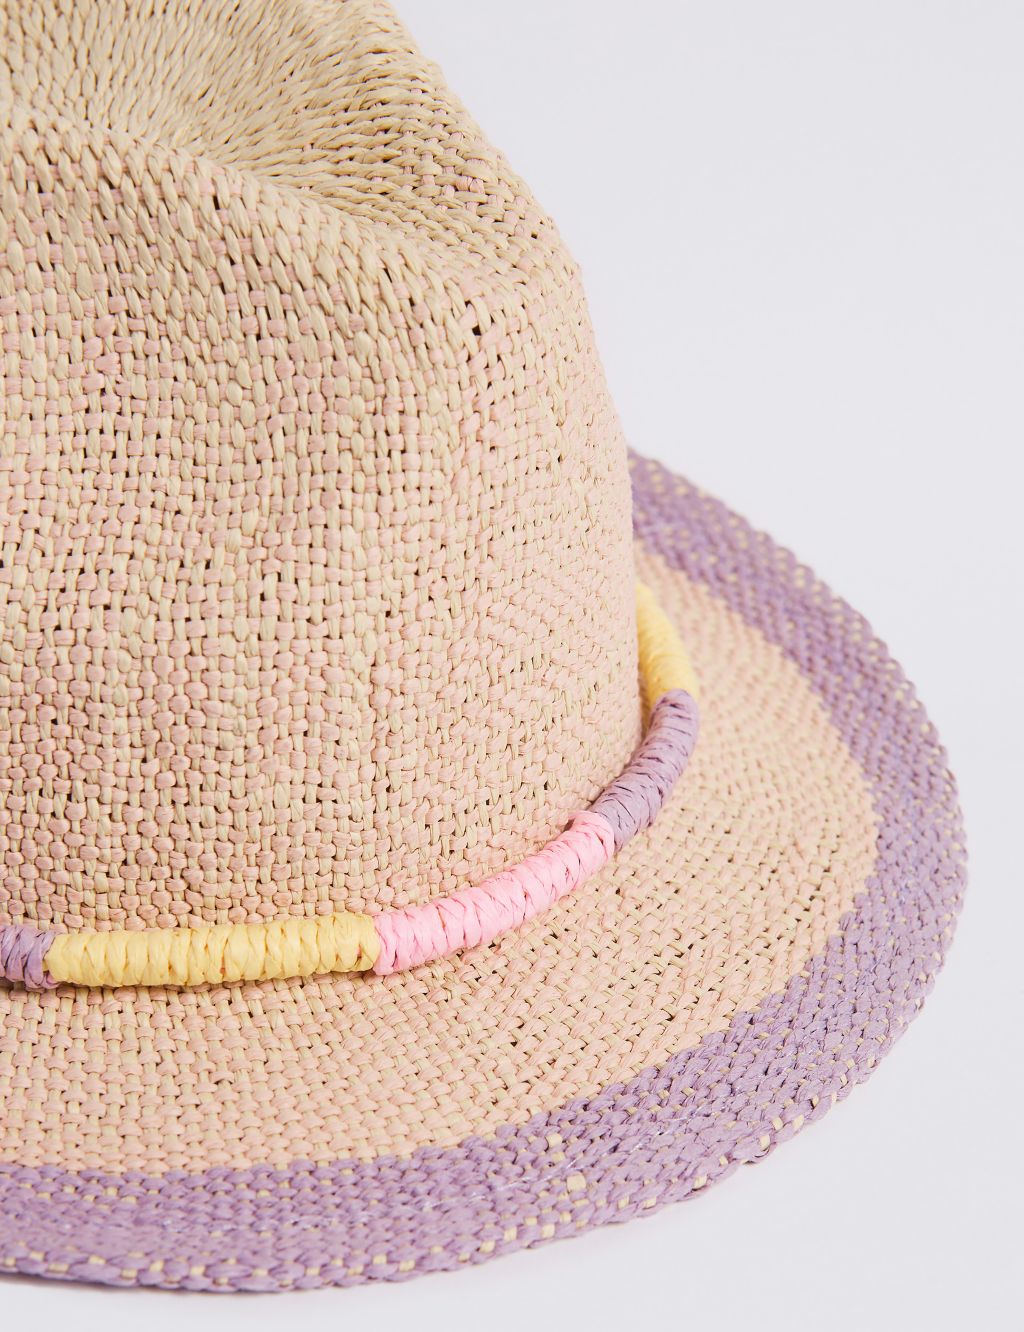 Kids’ Straw Summer Hat (6 Months - 6 Years) 2 of 4